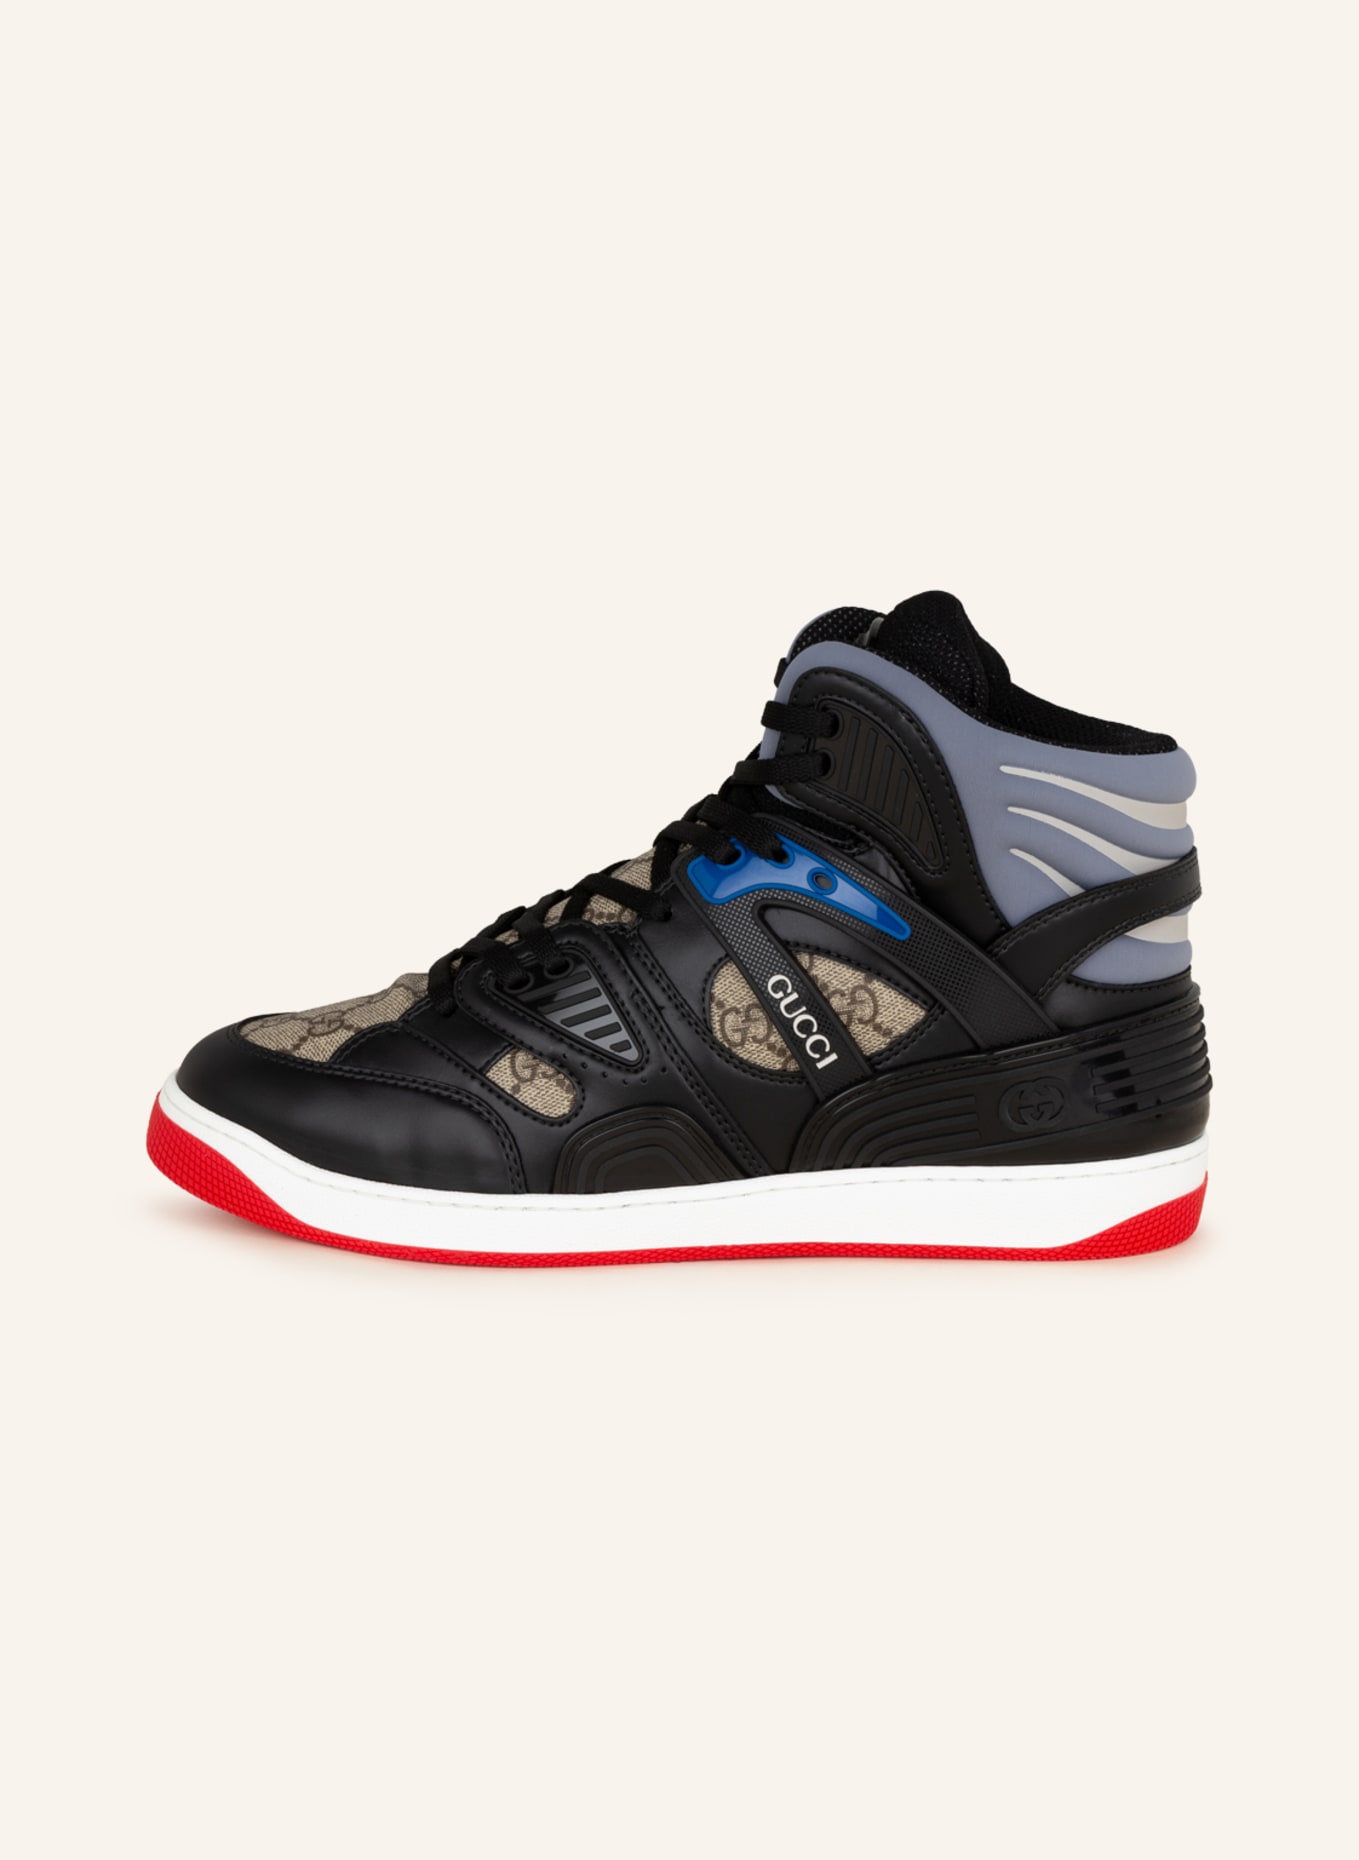 GUCCI Hightop-Sneaker BASKET GG SUPREME, Farbe: SCHWARZ/ BLAU/ BEIGE (Bild 4)